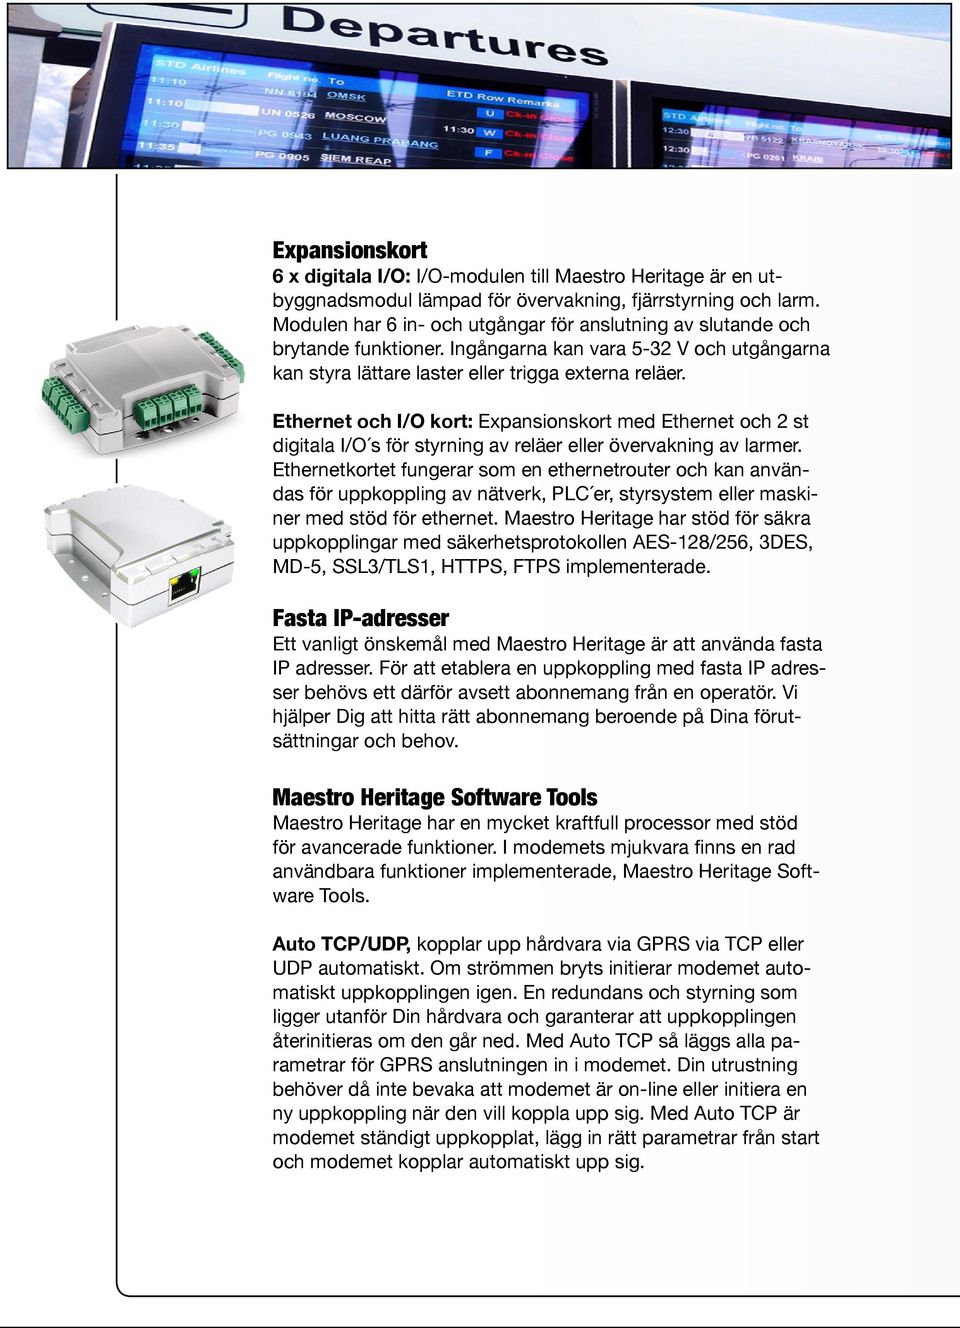 Ethernet och I/O kort: Expansionskort med Ethernet och 2 st digitala I/O s för styrning av reläer eller övervakning av larmer.